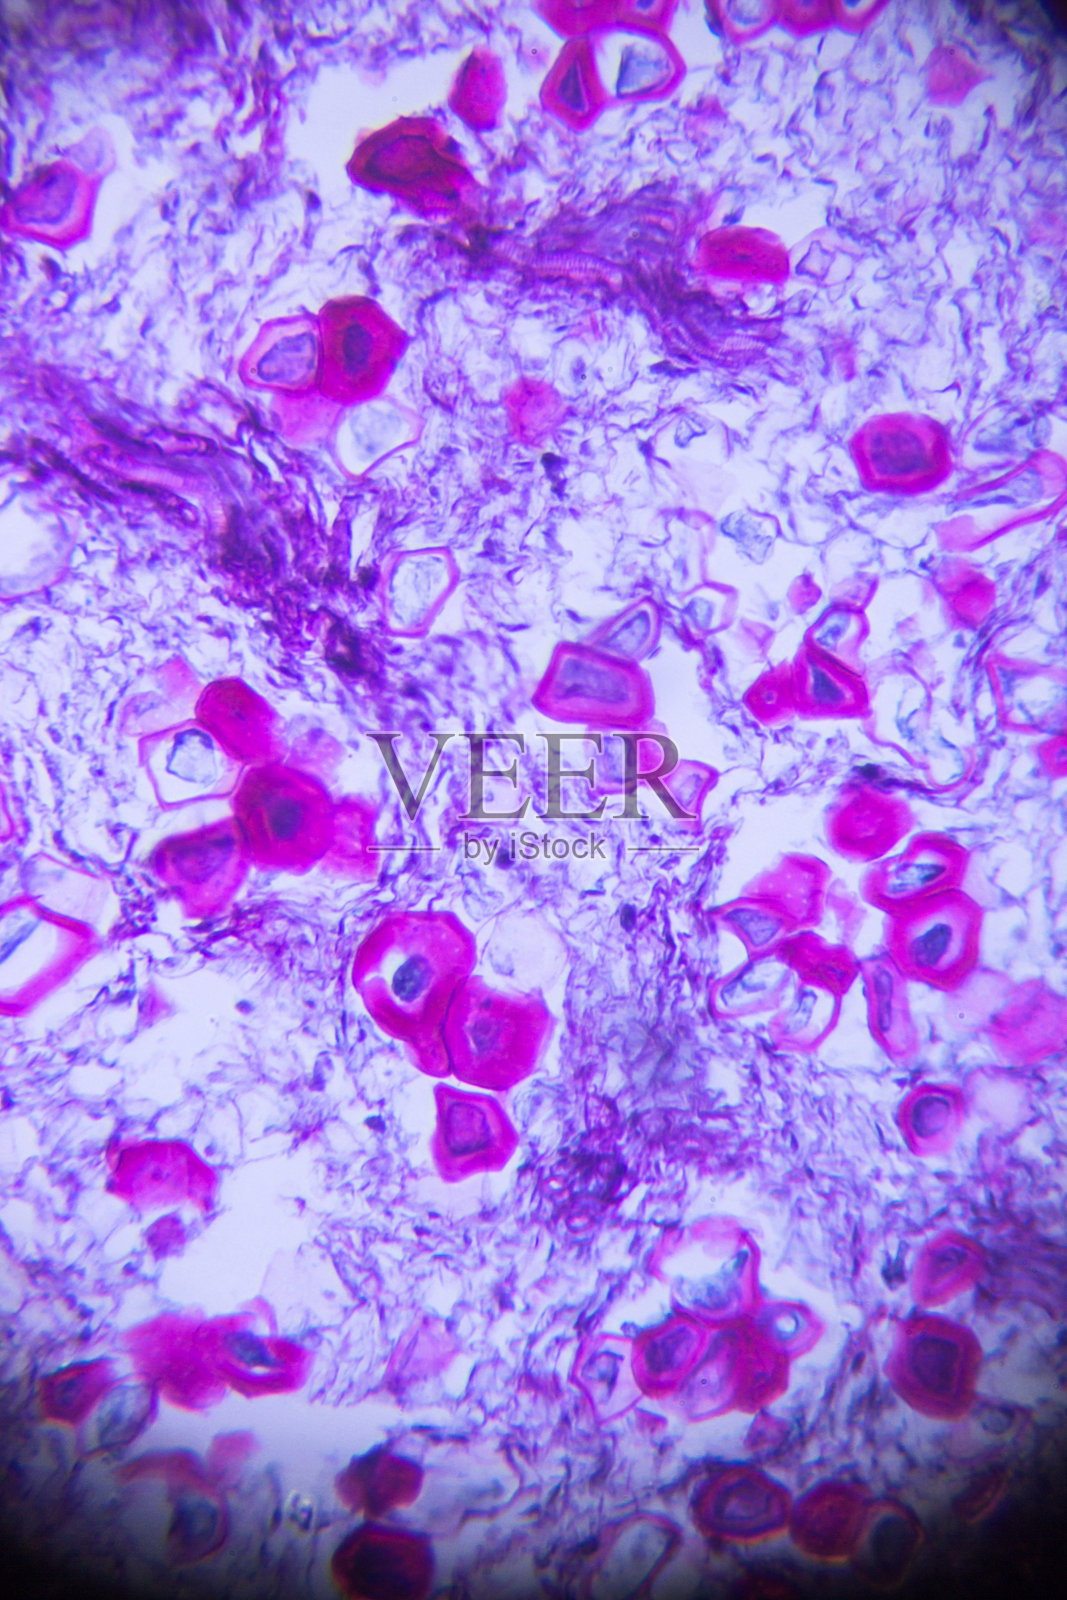 显微镜下的石梨细胞照片摄影图片